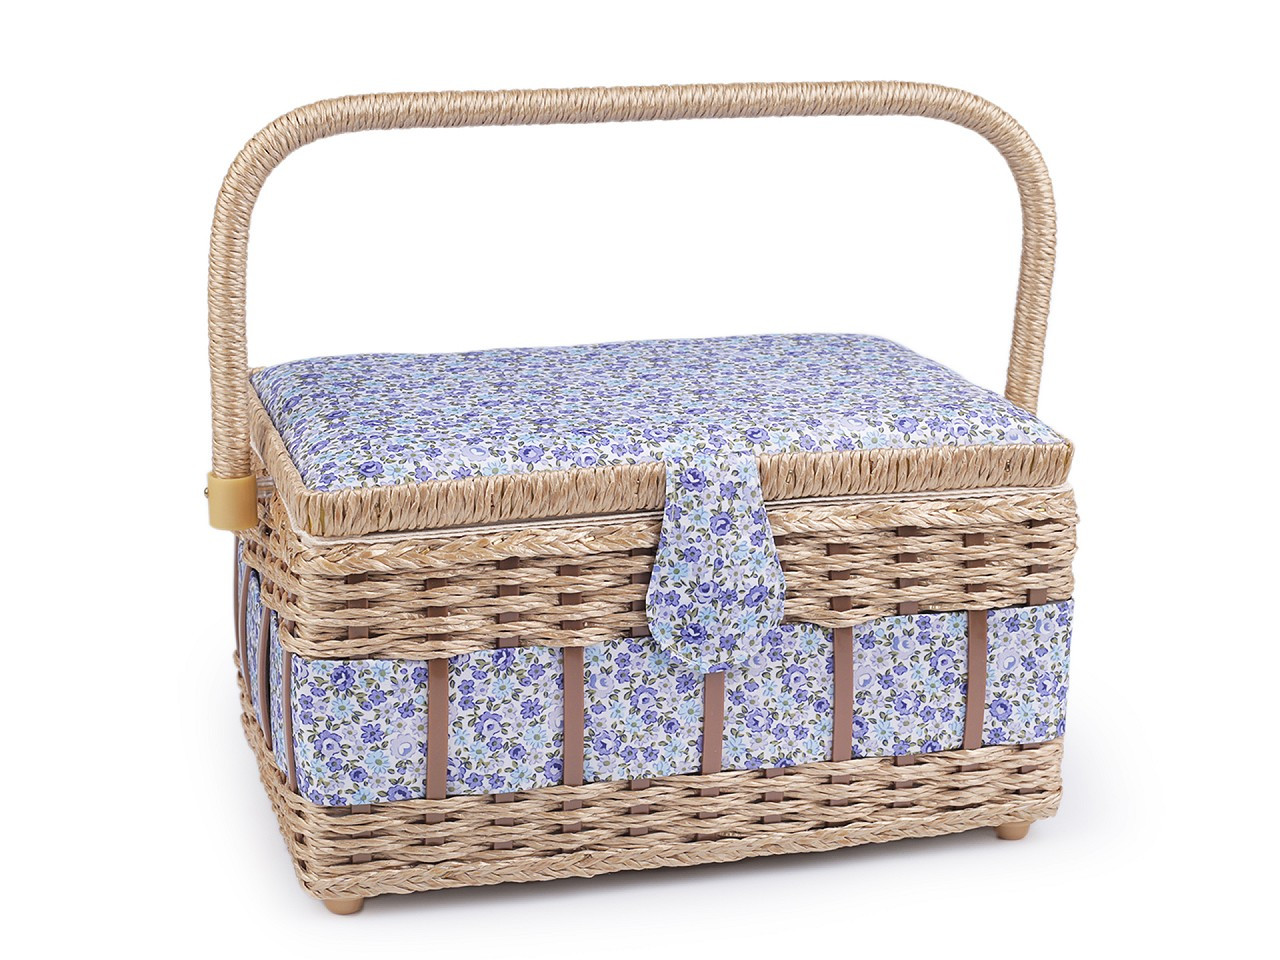 Kazeta / košík na šití čalouněný, barva 32 modrá světlá květy